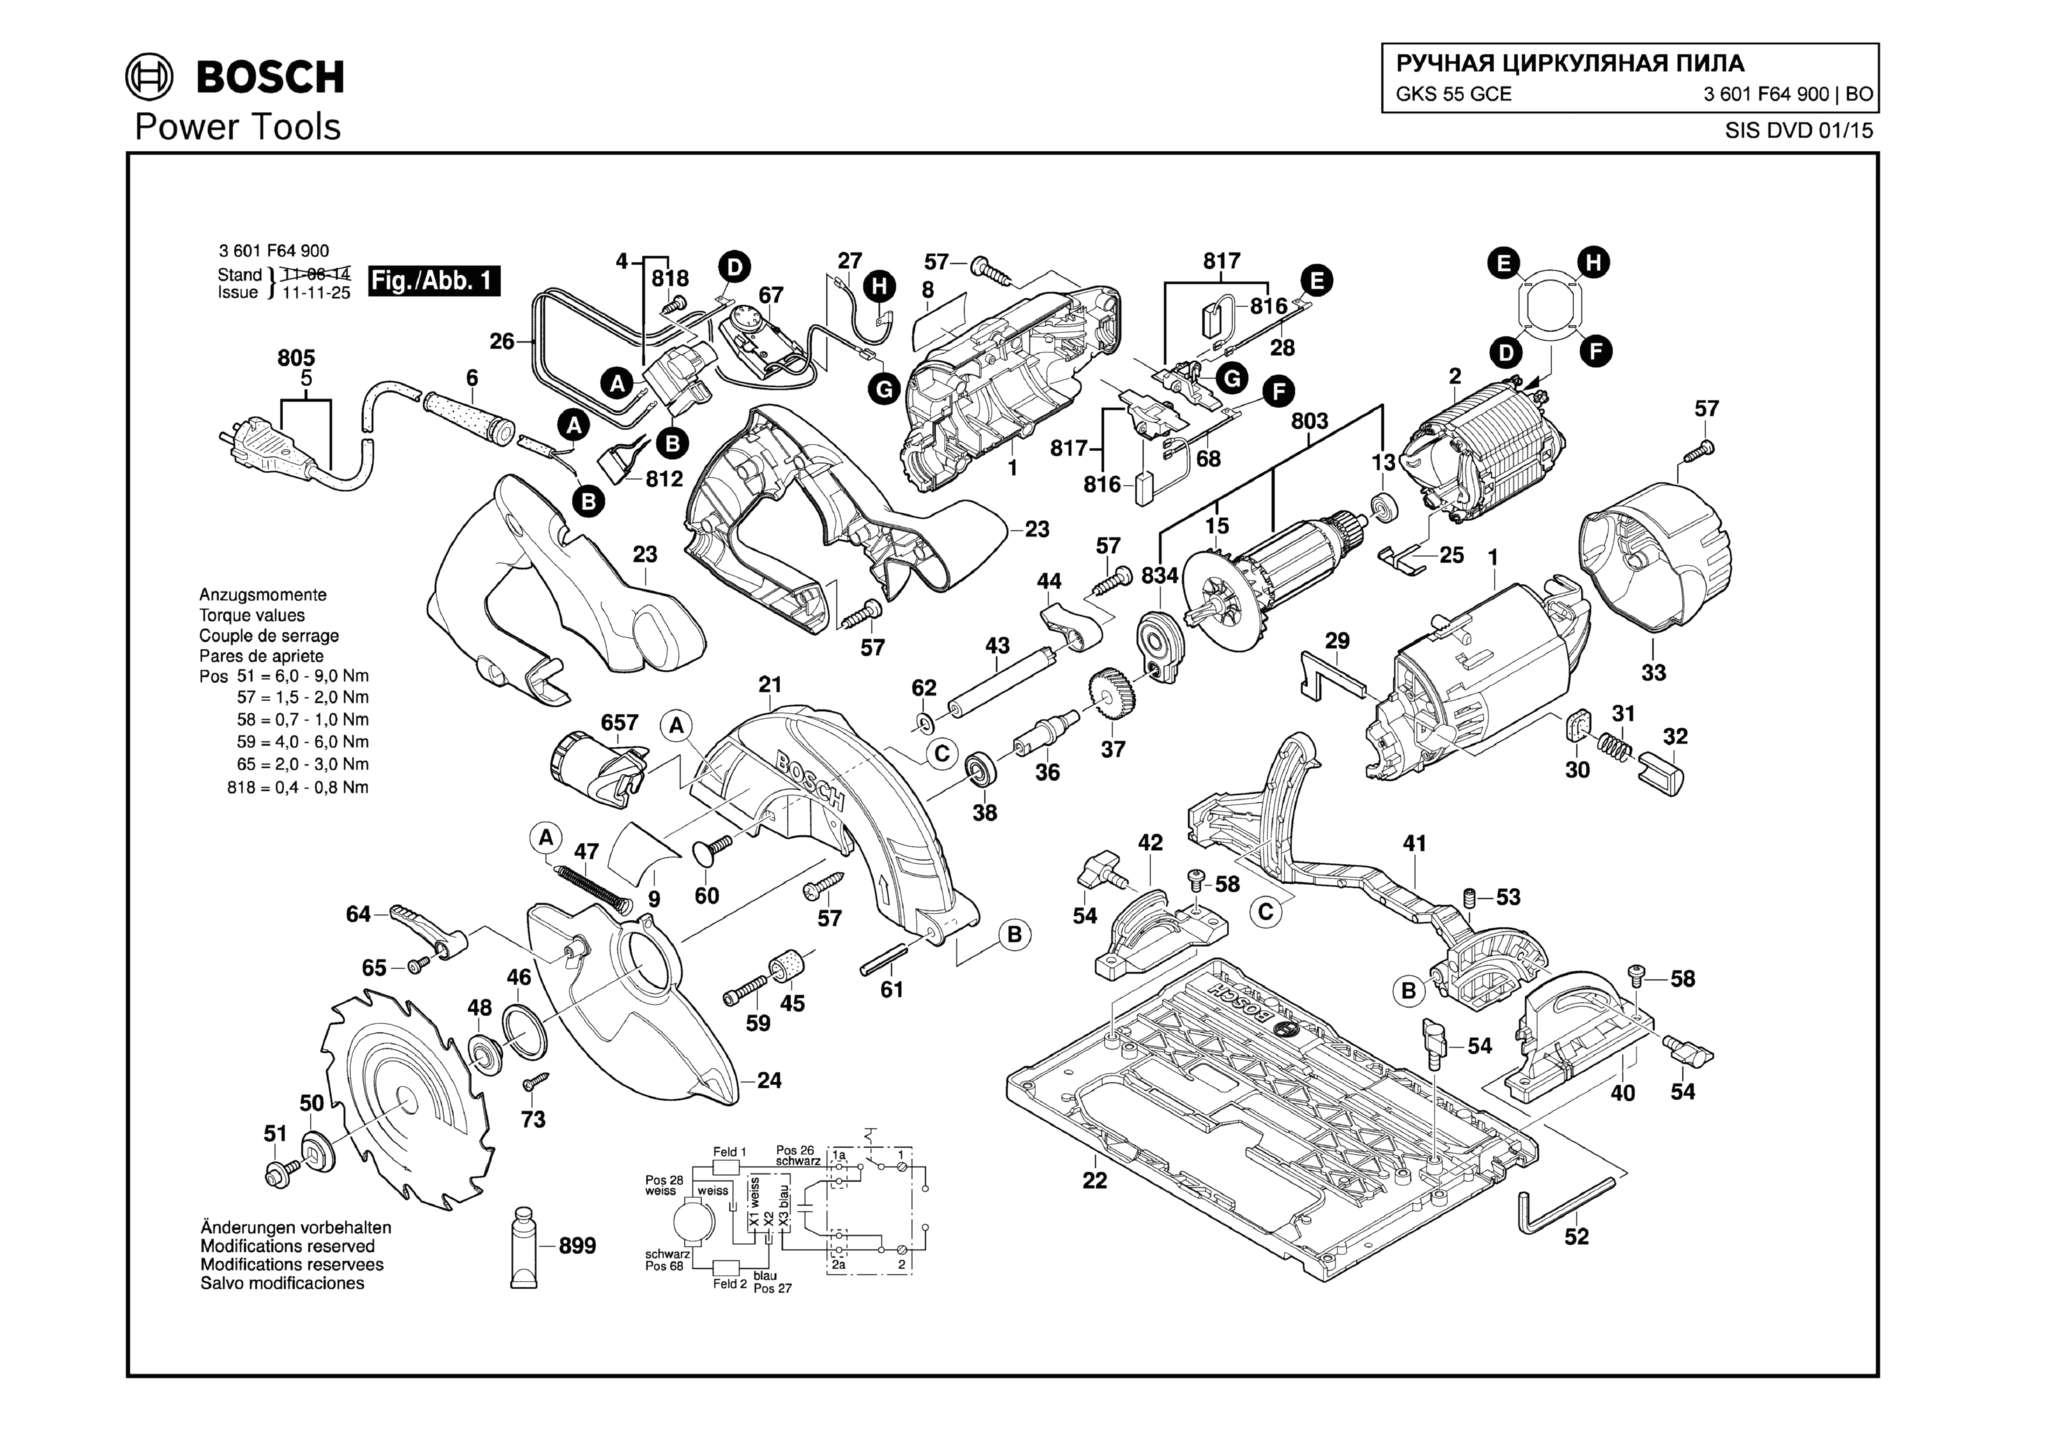 Запчасти, схема и деталировка Bosch GKS 55 GCE (ТИП 3601F64900)